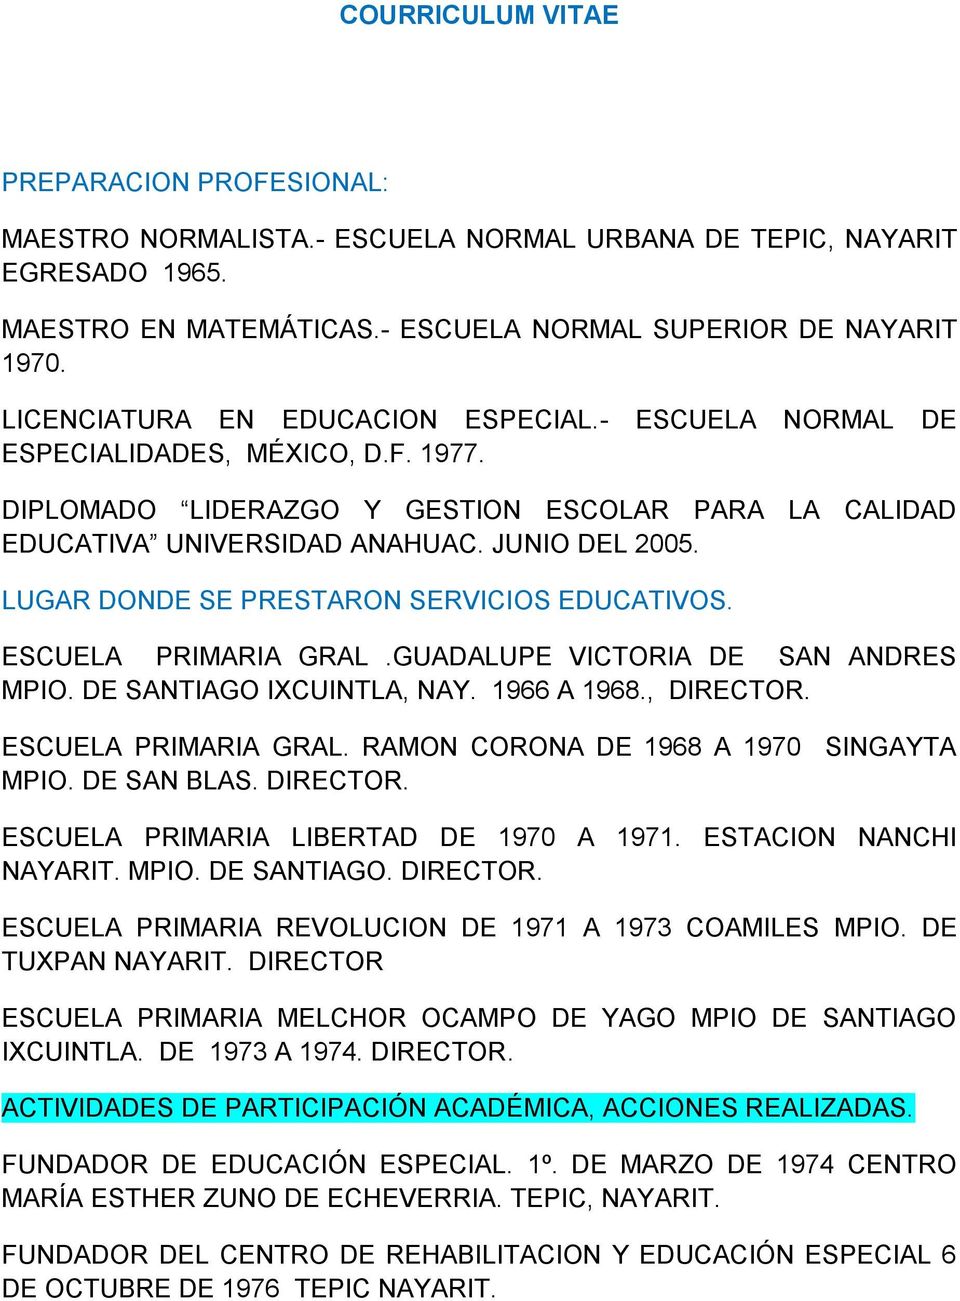 LUGAR DONDE SE PRESTARON SERVICIOS EDUCATIVOS. ESCUELA PRIMARIA GRAL.GUADALUPE VICTORIA DE SAN ANDRES MPIO. DE SANTIAGO IXCUINTLA, NAY. 1966 A 1968., DIRECTOR. ESCUELA PRIMARIA GRAL. RAMON CORONA DE 1968 A 1970 SINGAYTA MPIO.